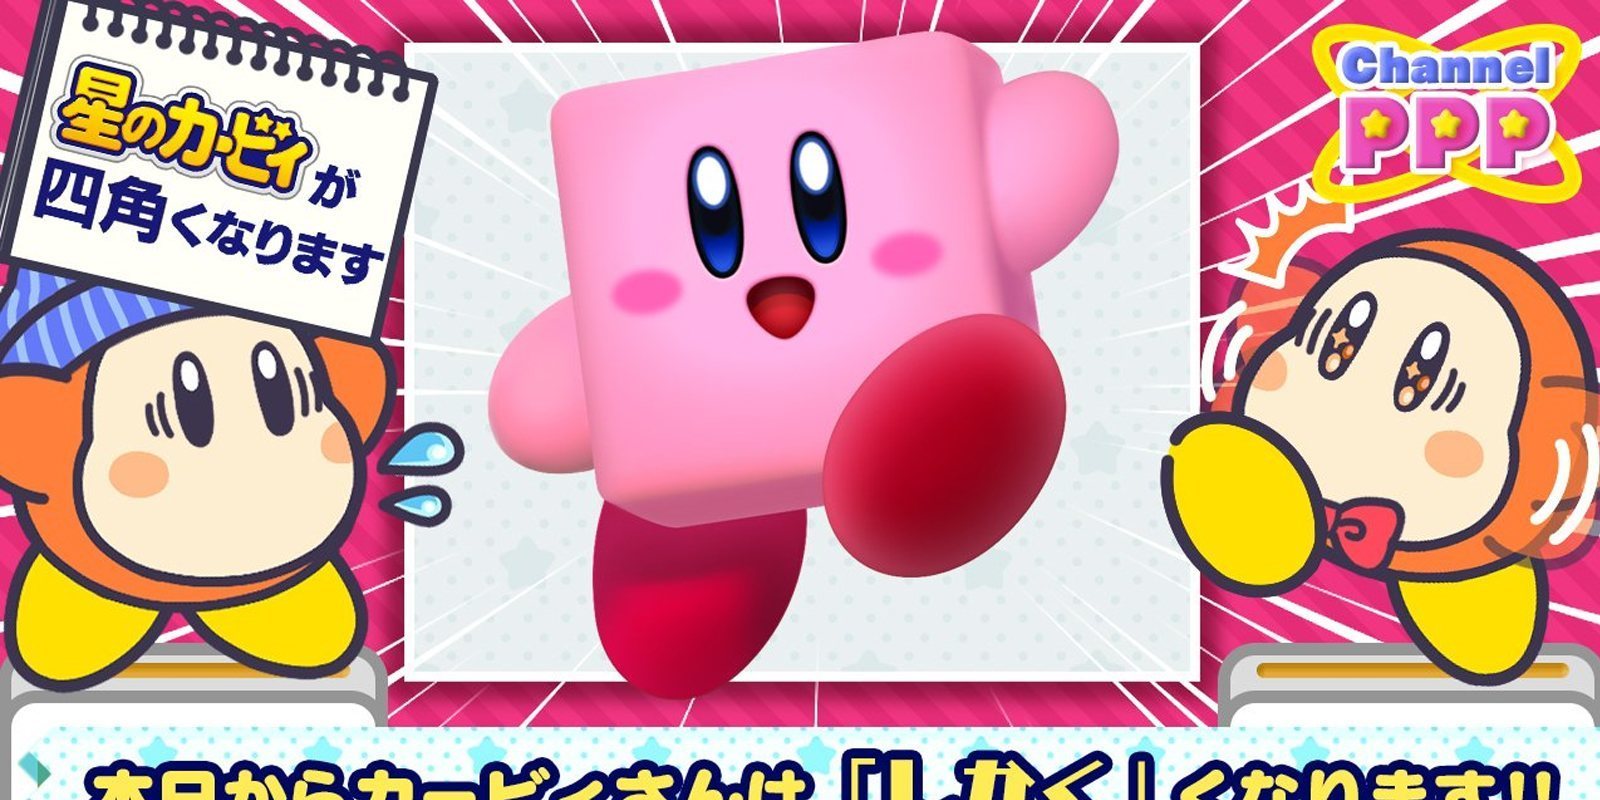 Kirby pierde su tradicional forma circular y se convierte en un cubo